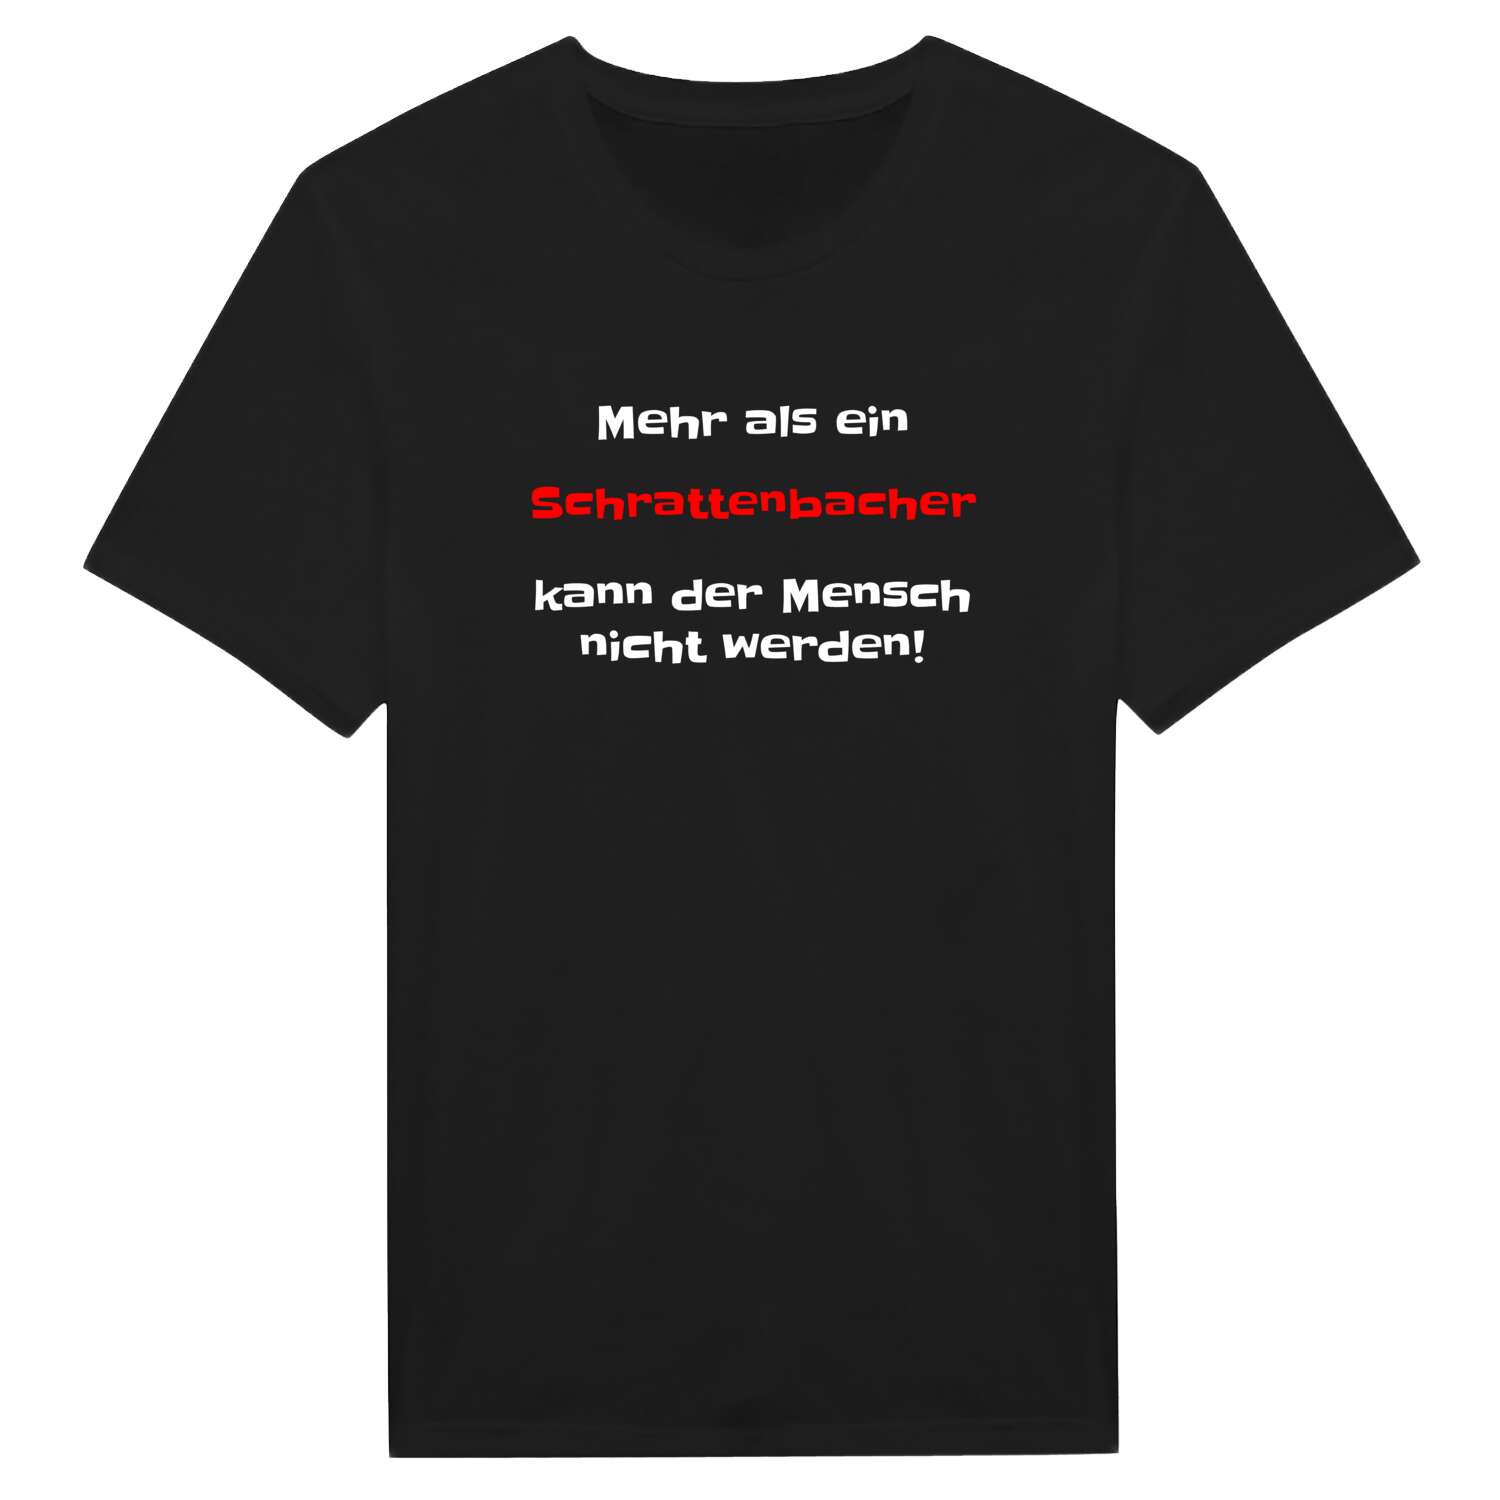 Schrattenbach T-Shirt »Mehr als ein«